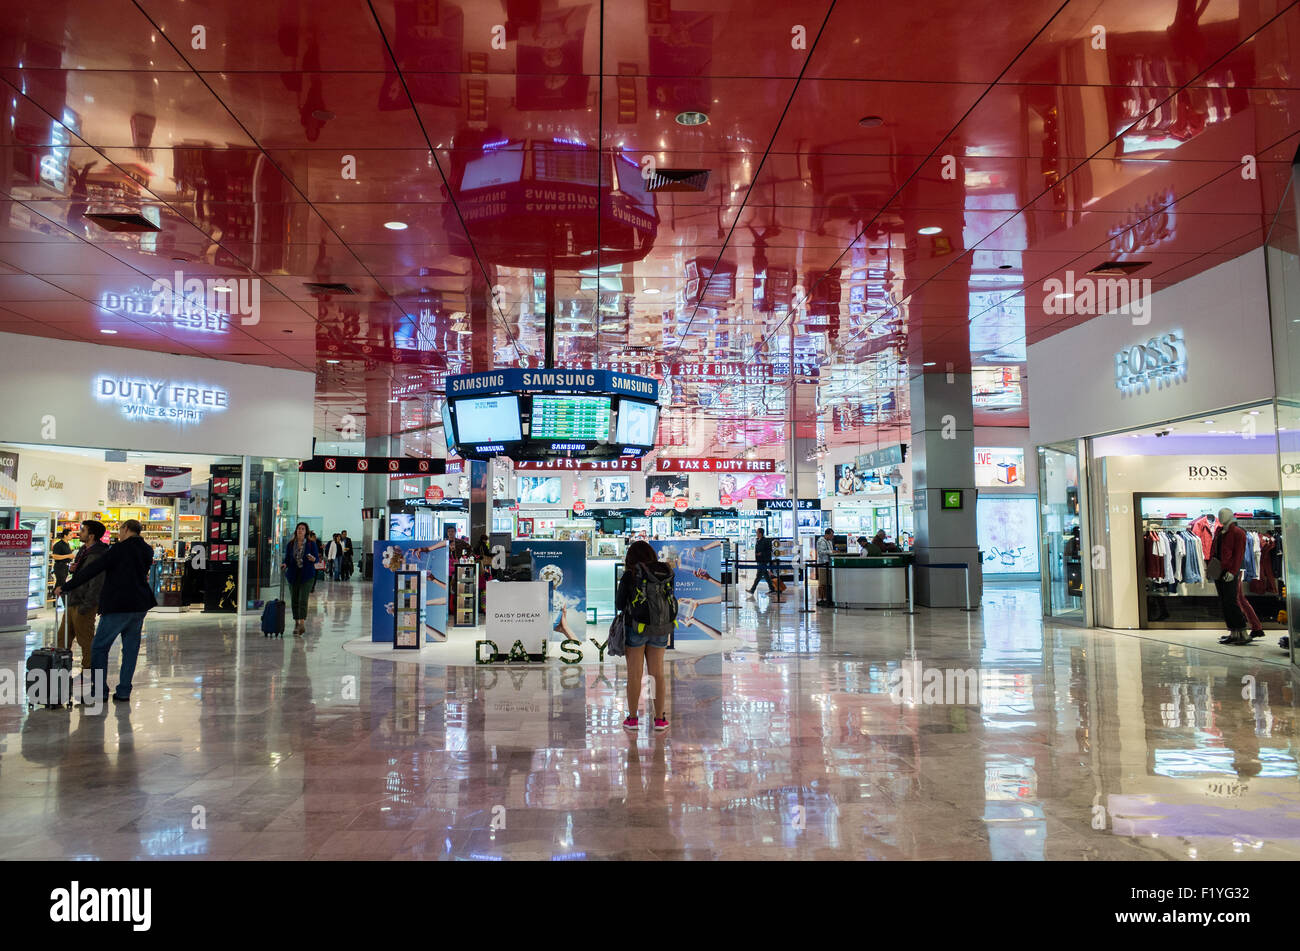 In the international terminal of Mexico City International Airport (Aeropuerto Internacional de la Ciudad de México). Stock Photo